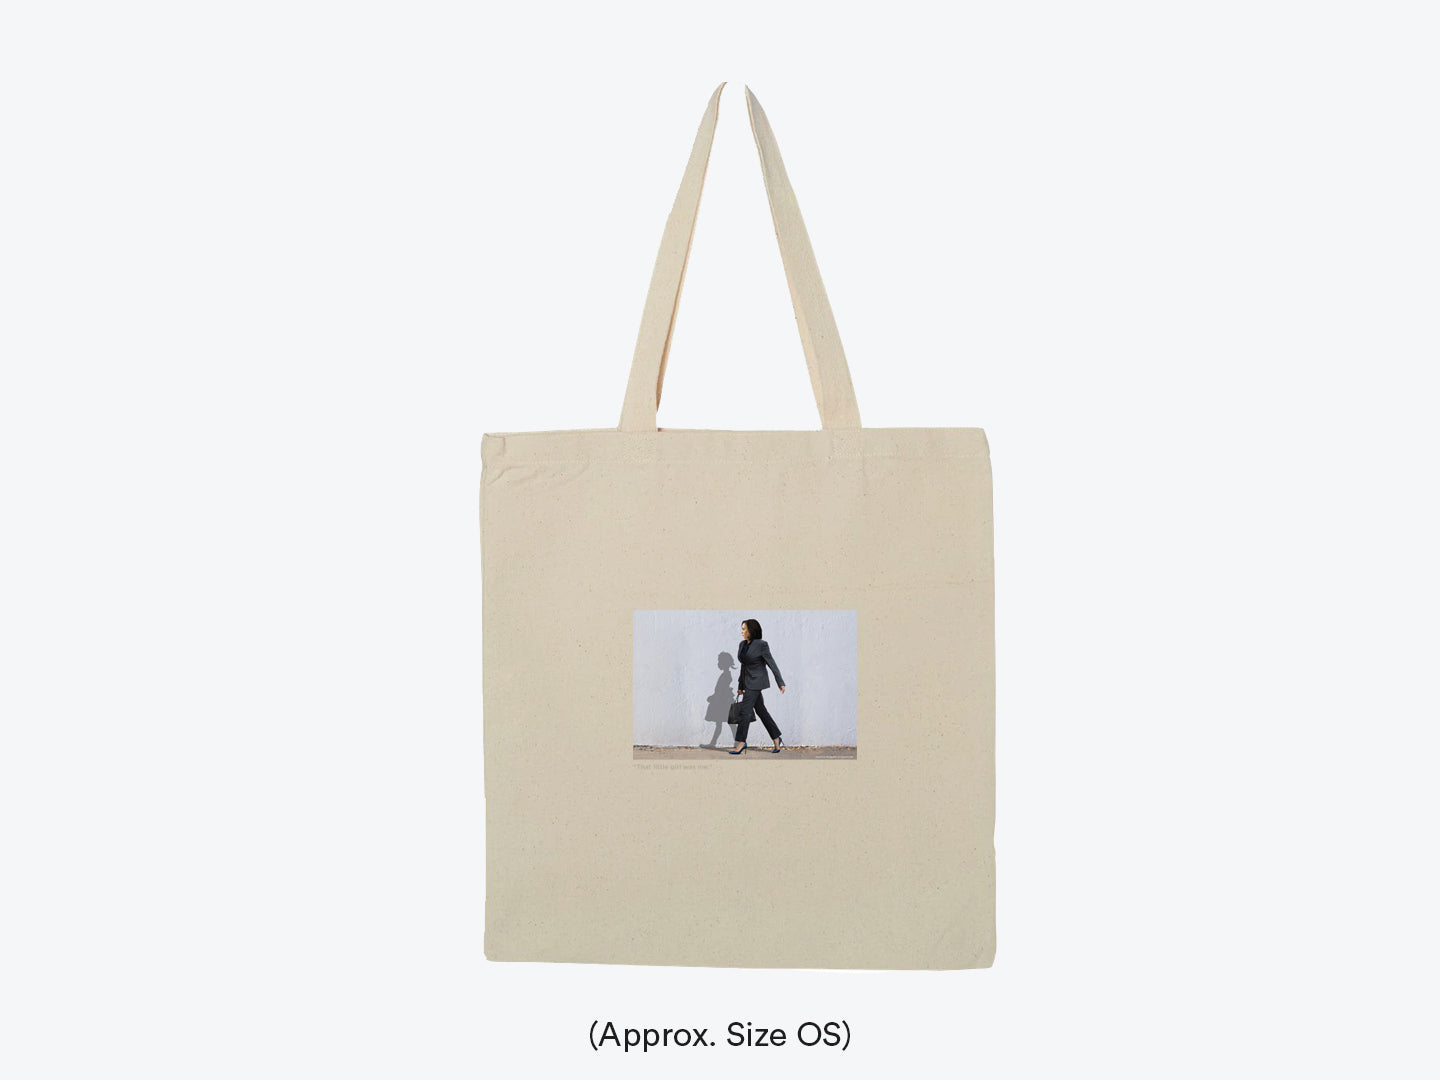 Mancave Tote Bag by Michael Godard - Michael Godard